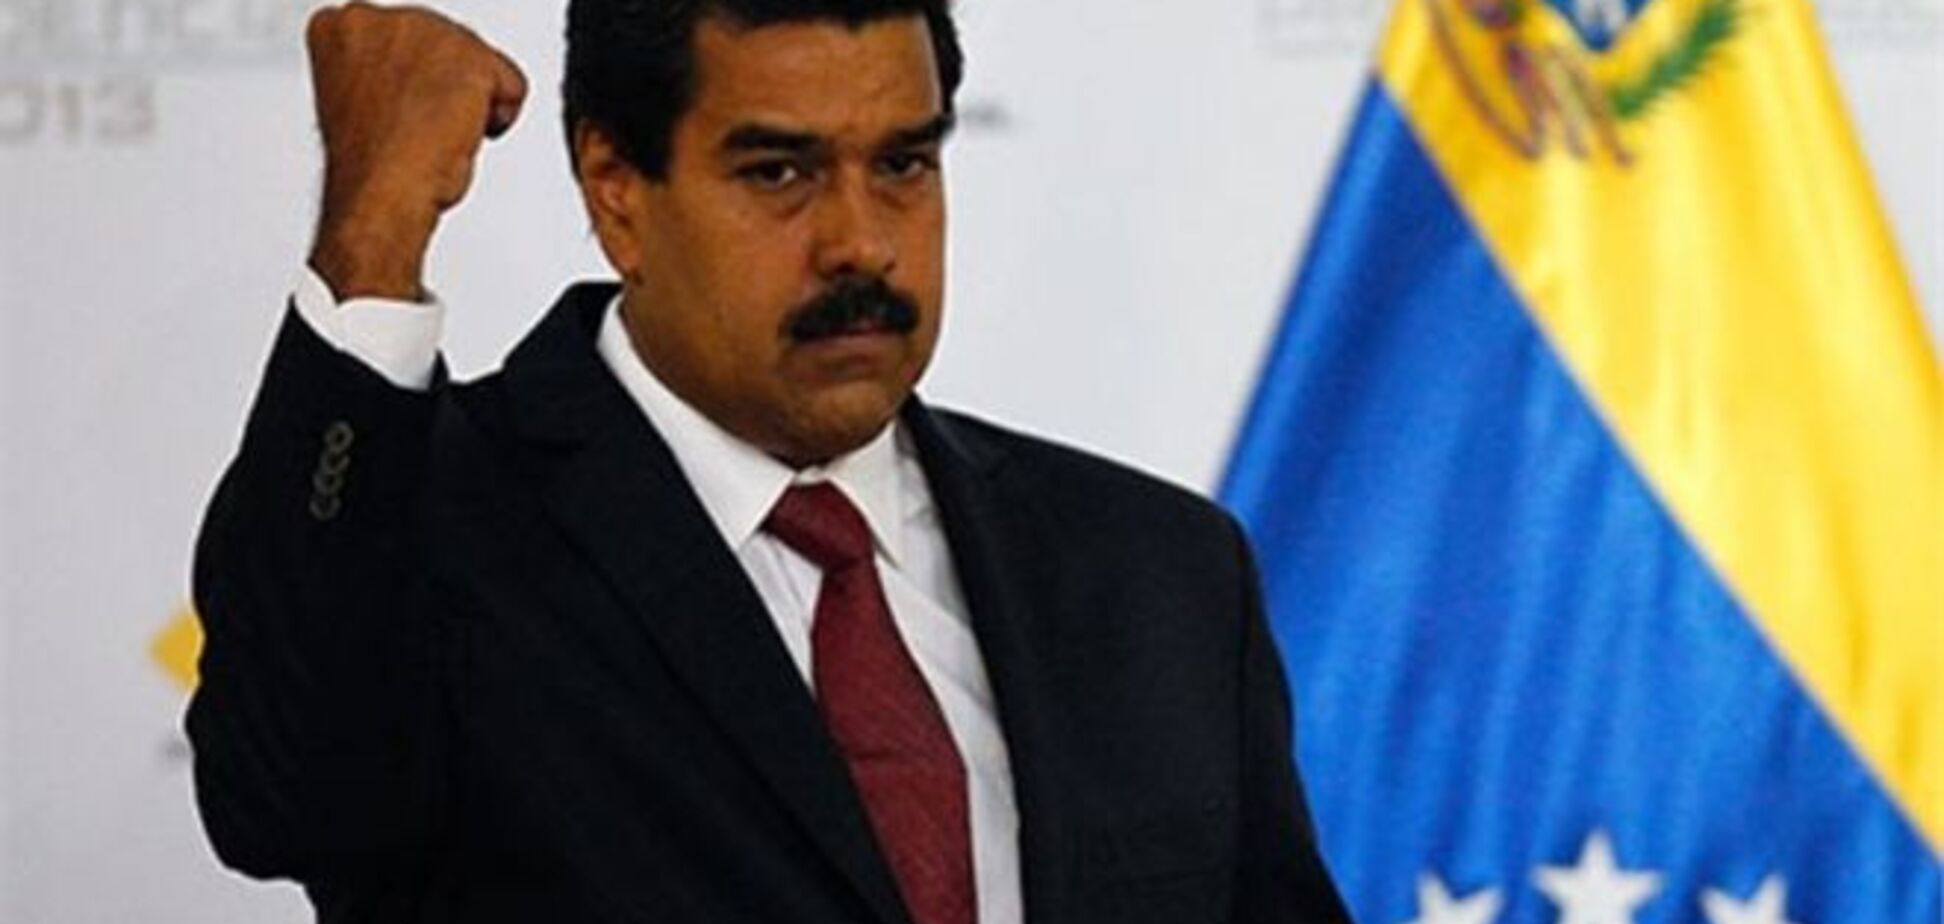 Мадуро: за отключением света в Венесуэле стоят экстремисты